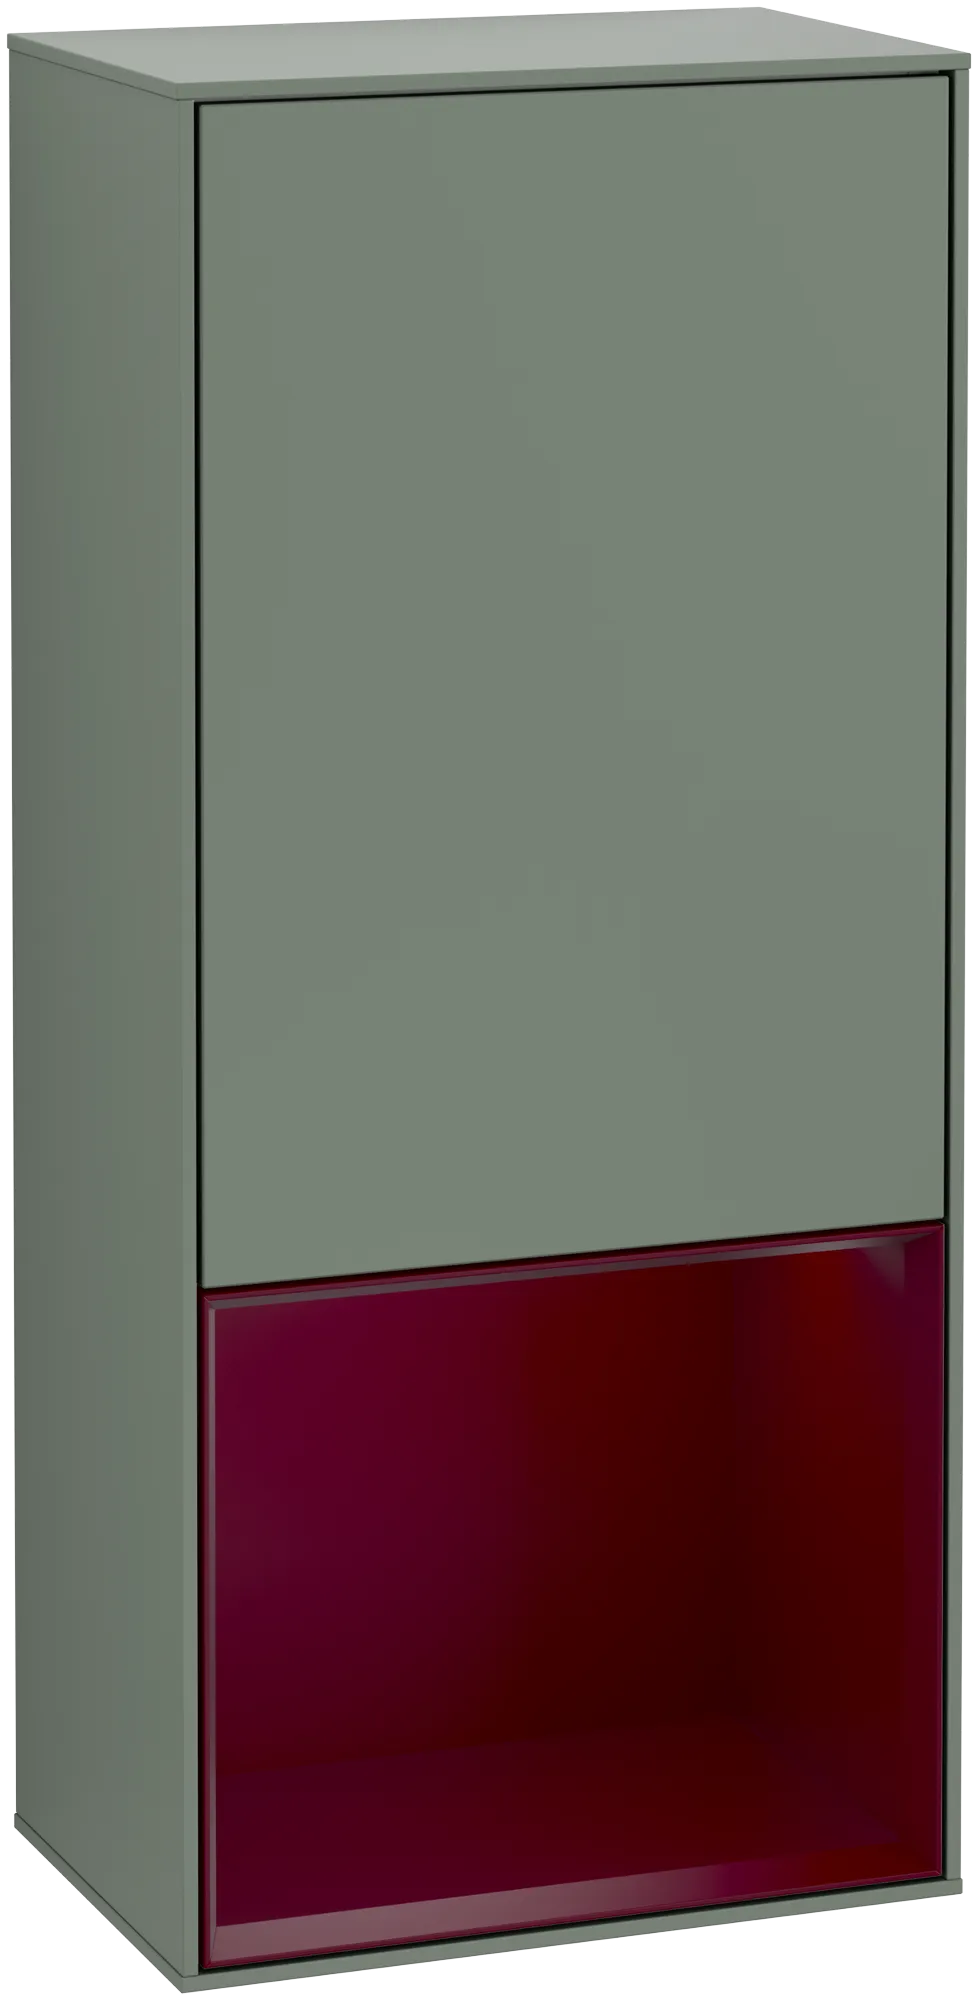 Bild von VILLEROY BOCH Finion Seitenschrank, mit Beleuchtung, 1 Tür, 418 x 936 x 270 mm, Olive Matt Lacquer / Peony Matt Lacquer #G540HBGM